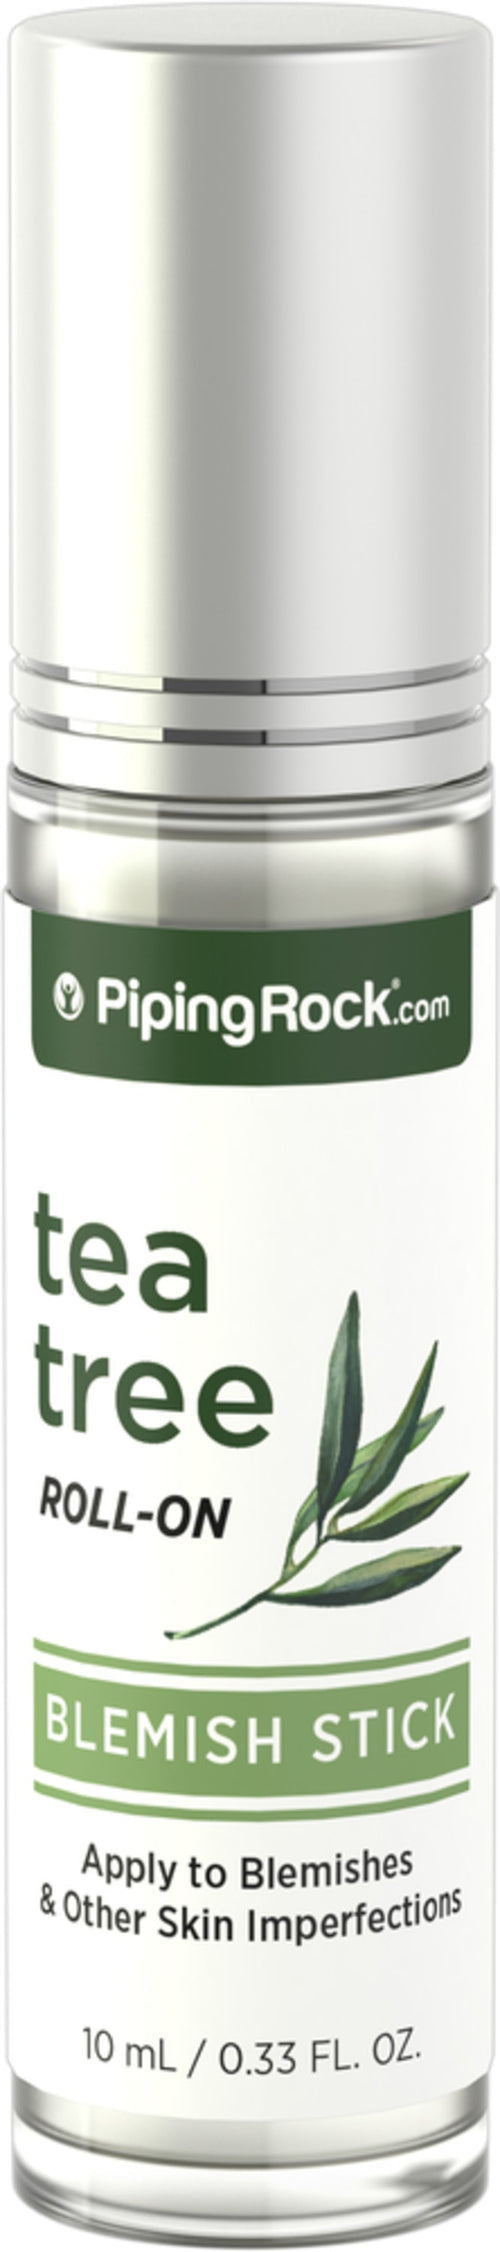 Stick de aceite de árbol del té para imperfecciones de la piel  0.33 fl oz 10 mL Roll-On    